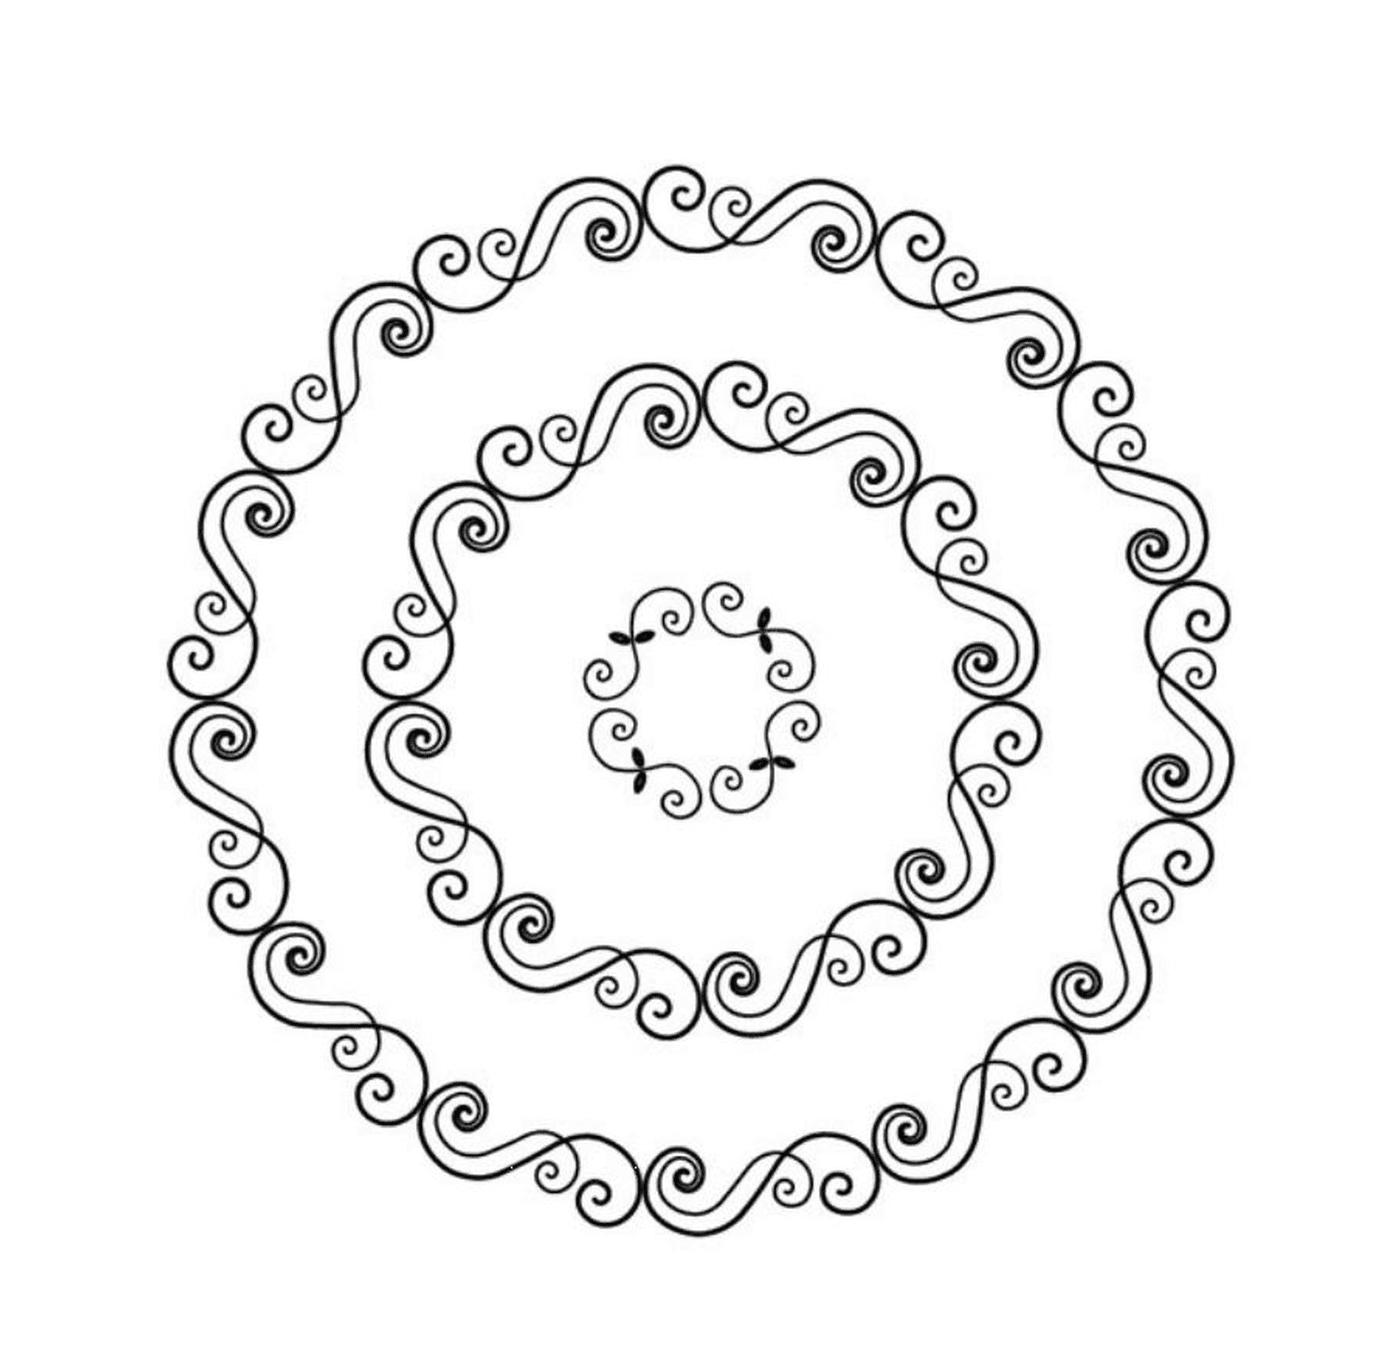  Quattro mandala a spirale 